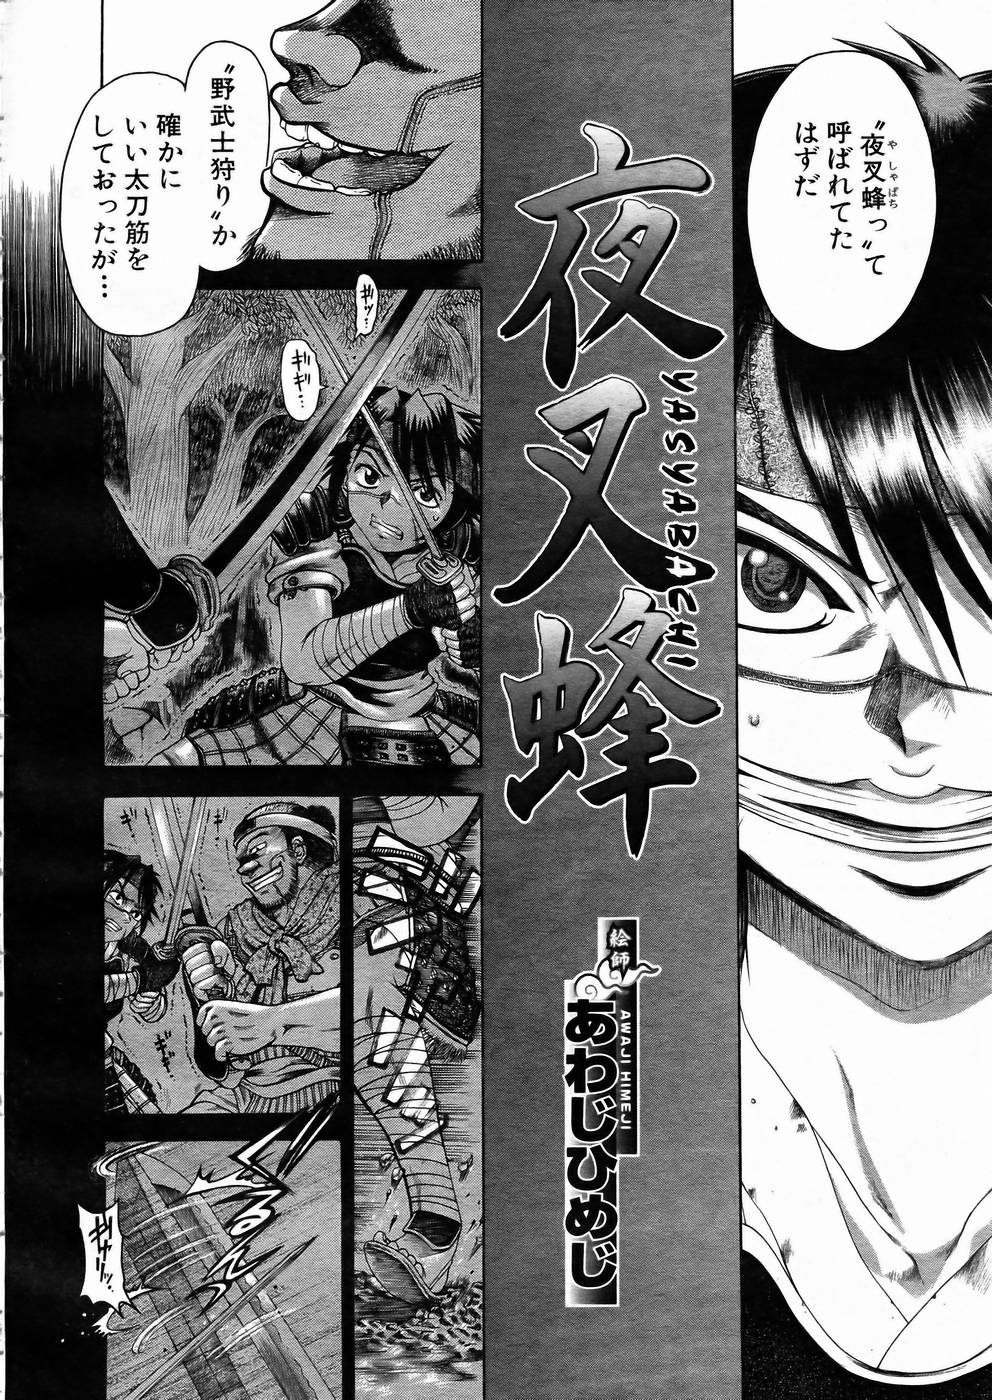 [アンソロジー] 少女剣客凌辱コミック Vol.01 くノ一斬!